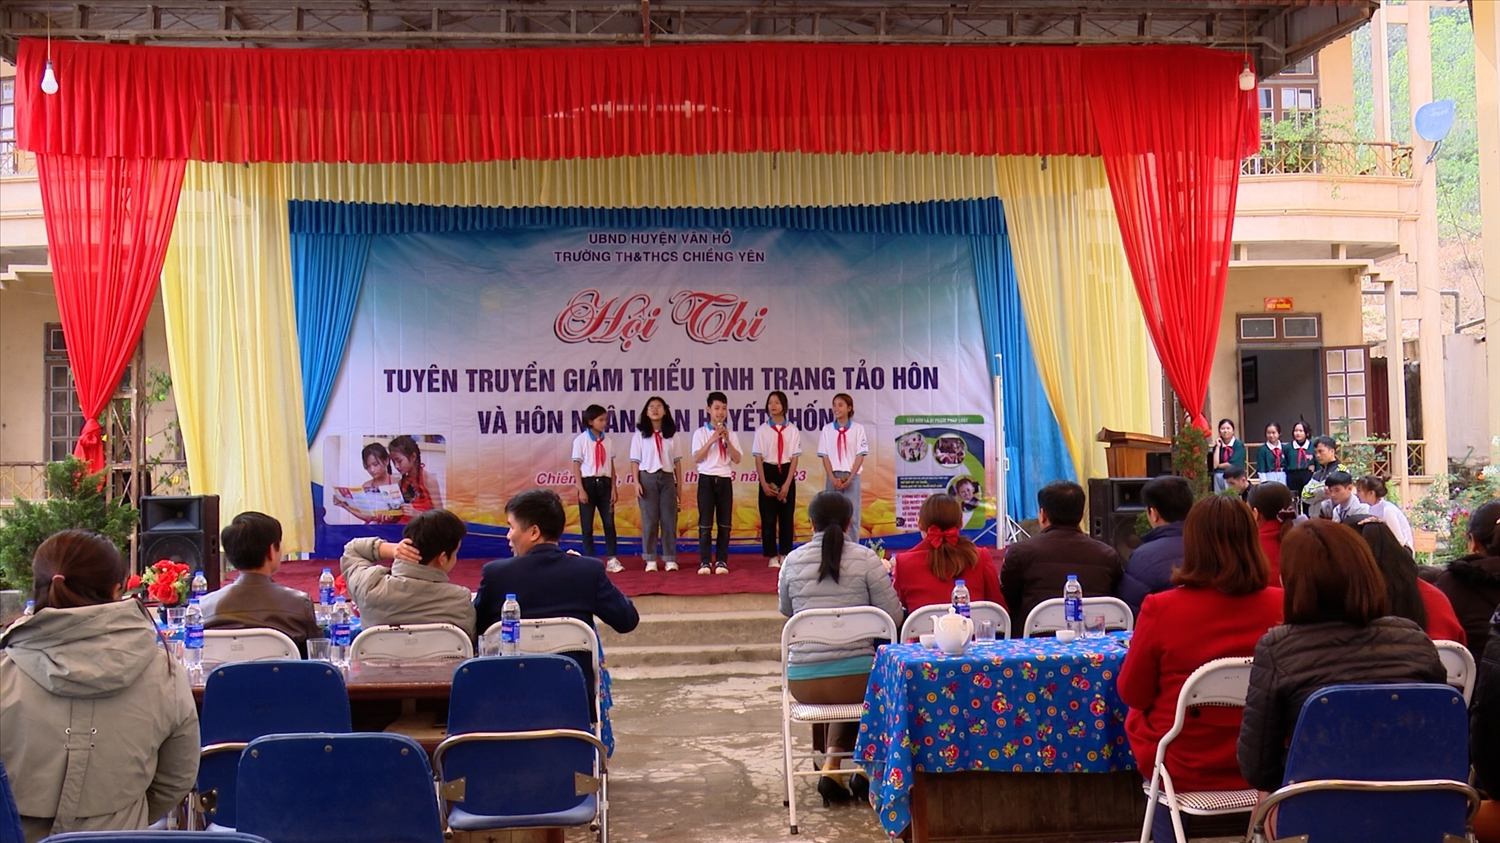 Trường TH&THCS Chiềng Yên (Vân Hồ, Sơn La) tổ chức Hội thi tuyên truyền giảm thiểu tảo hôn và hôn nhân cận huyết thống